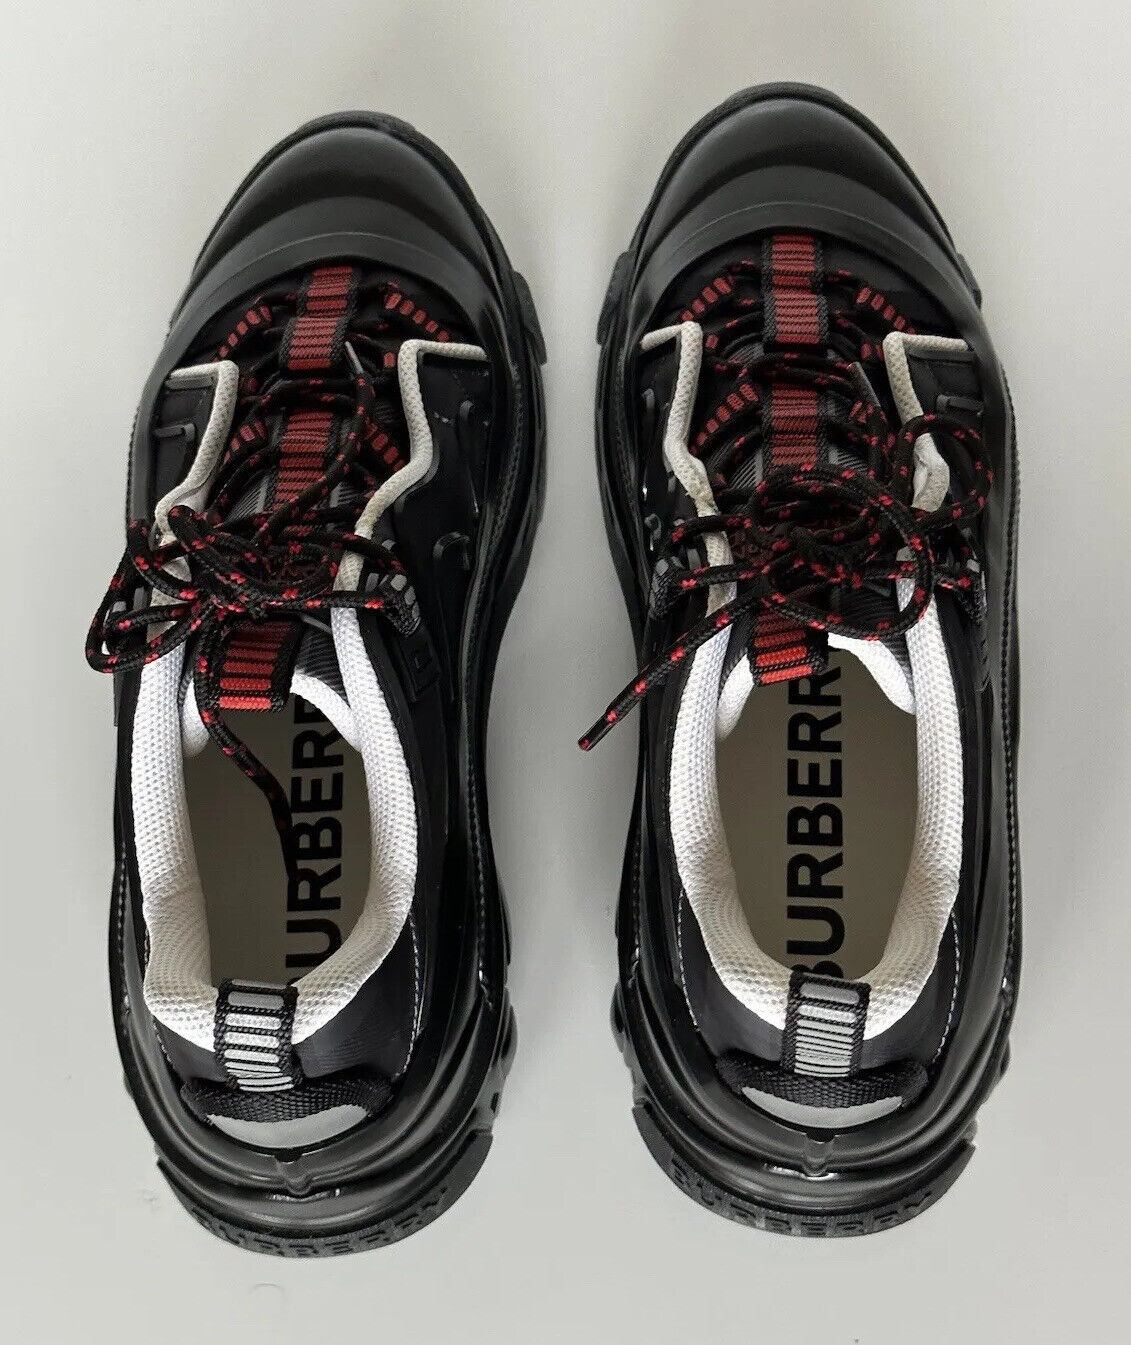 Мужские темно-серые кроссовки в клетку Burberry Arthur за 890 долларов США 13 US (46) 8055576 IT 